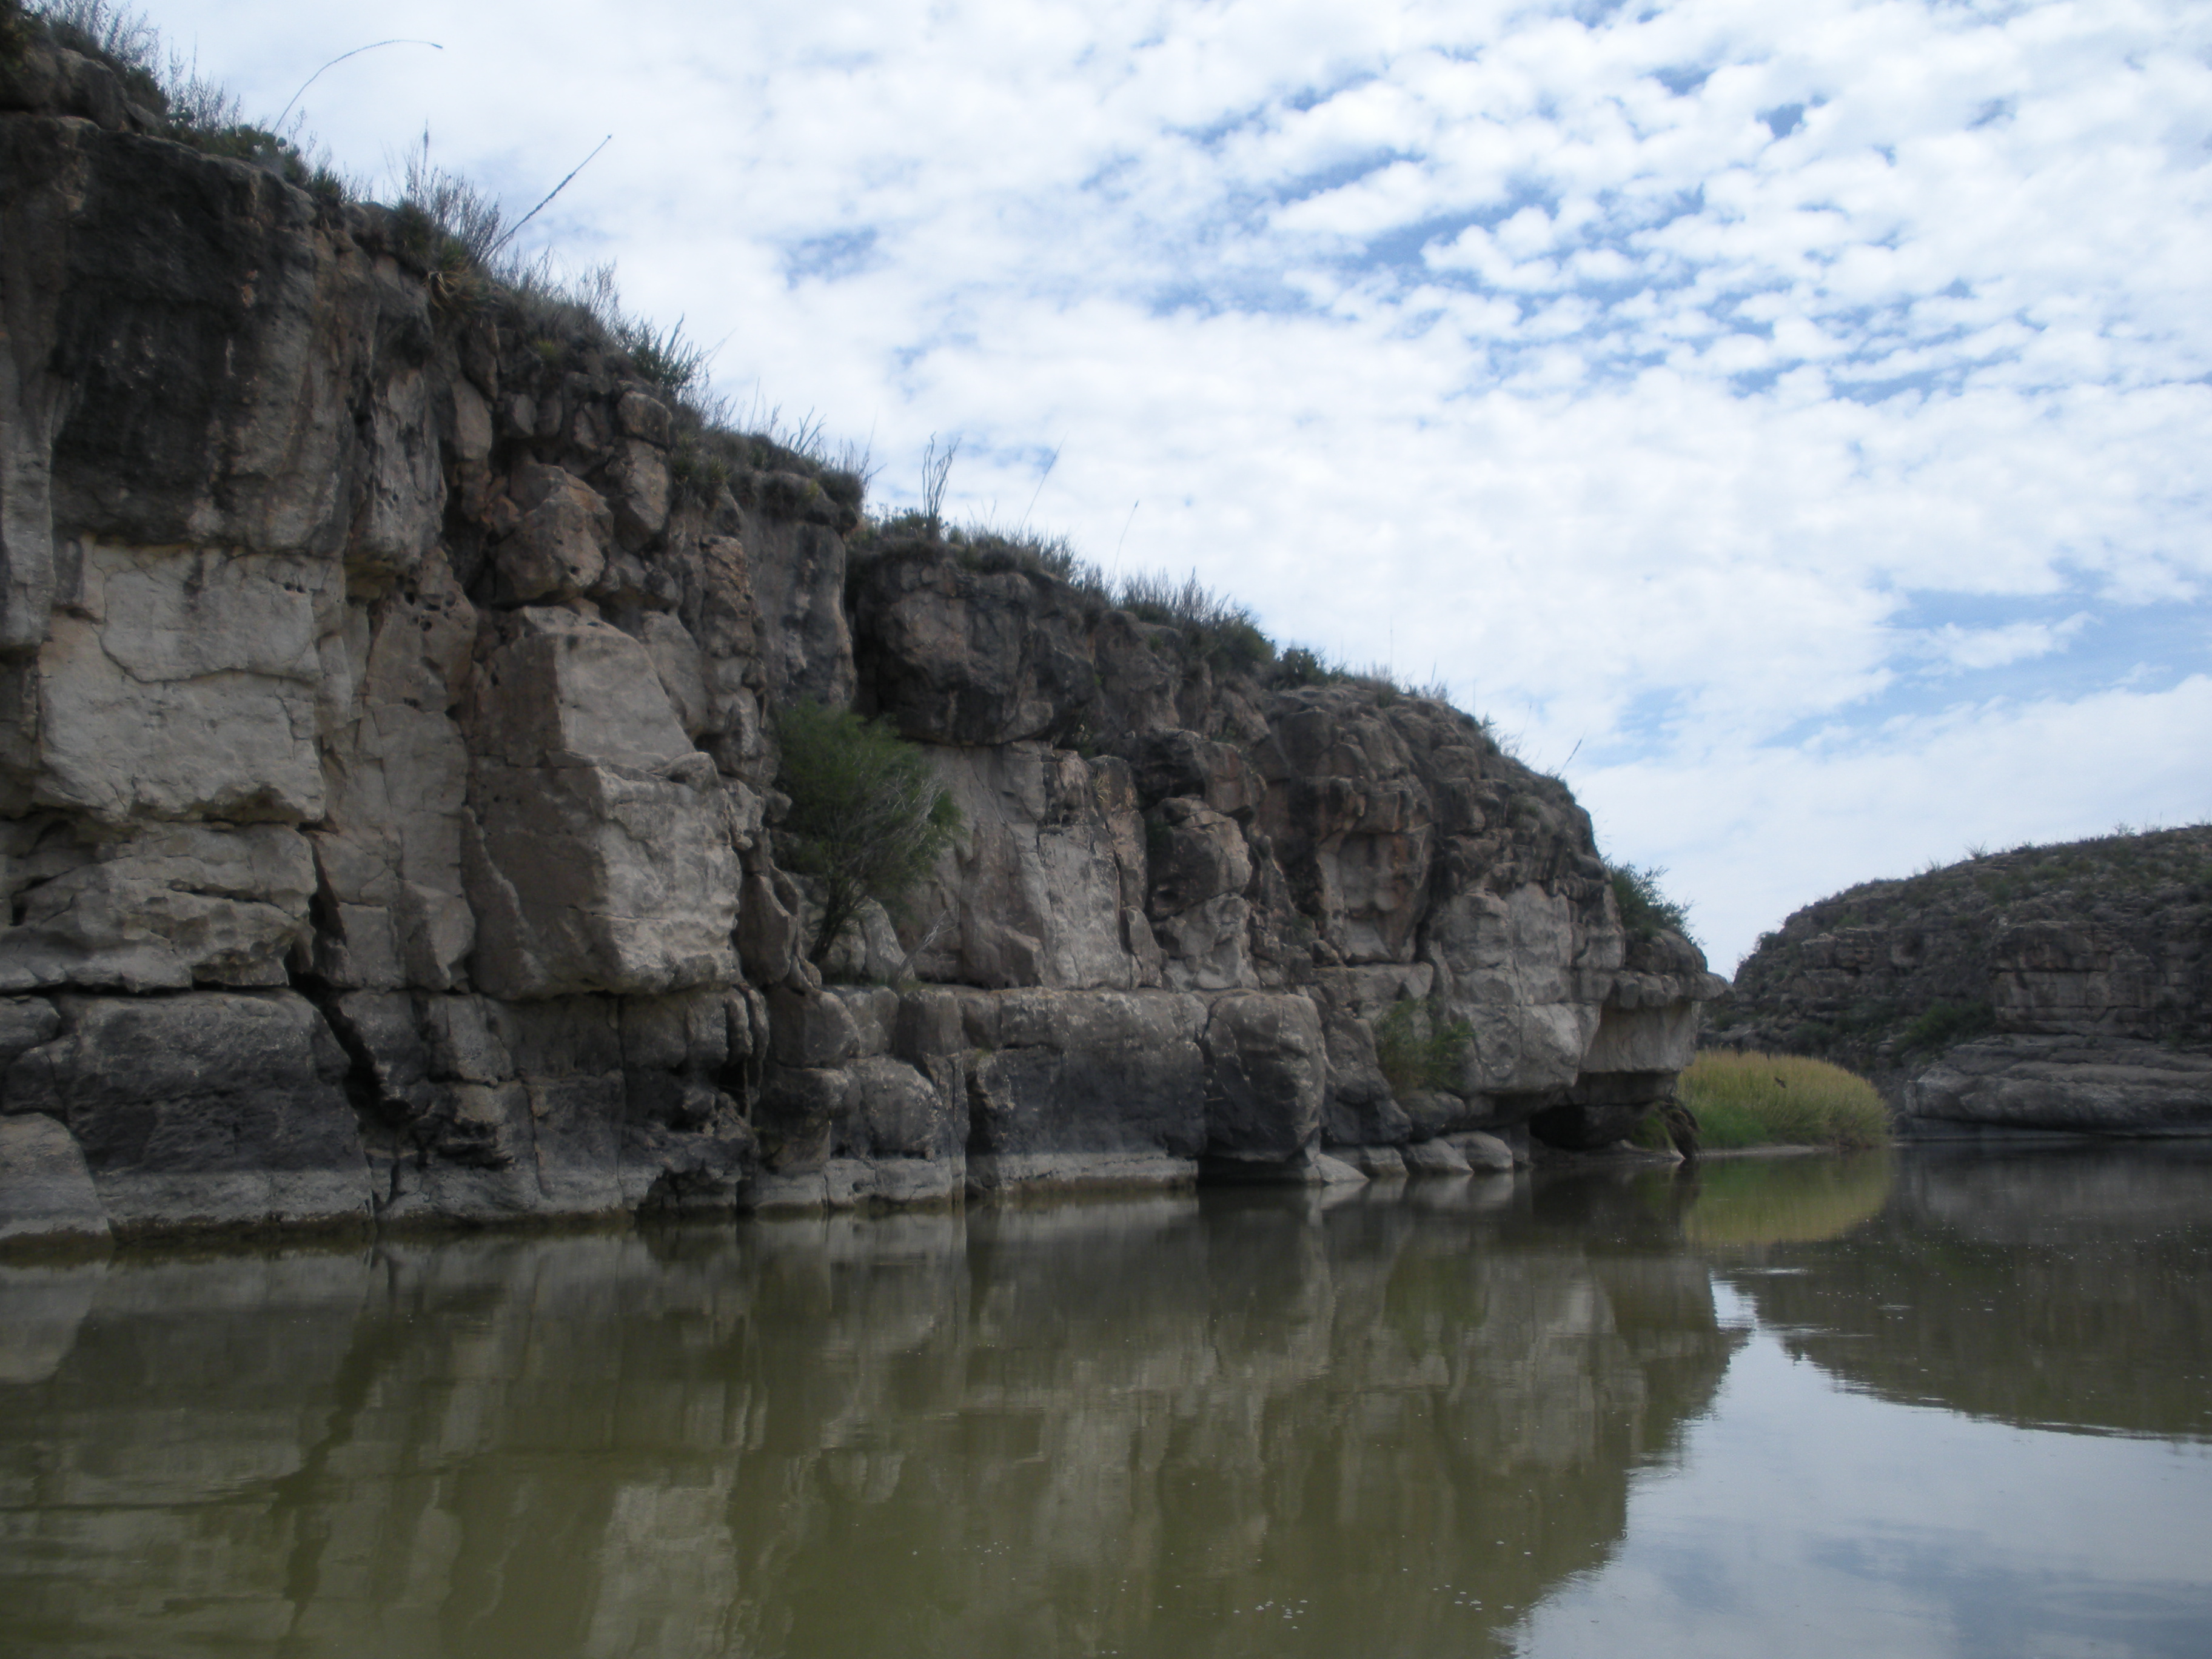 Río Bravo del Norte